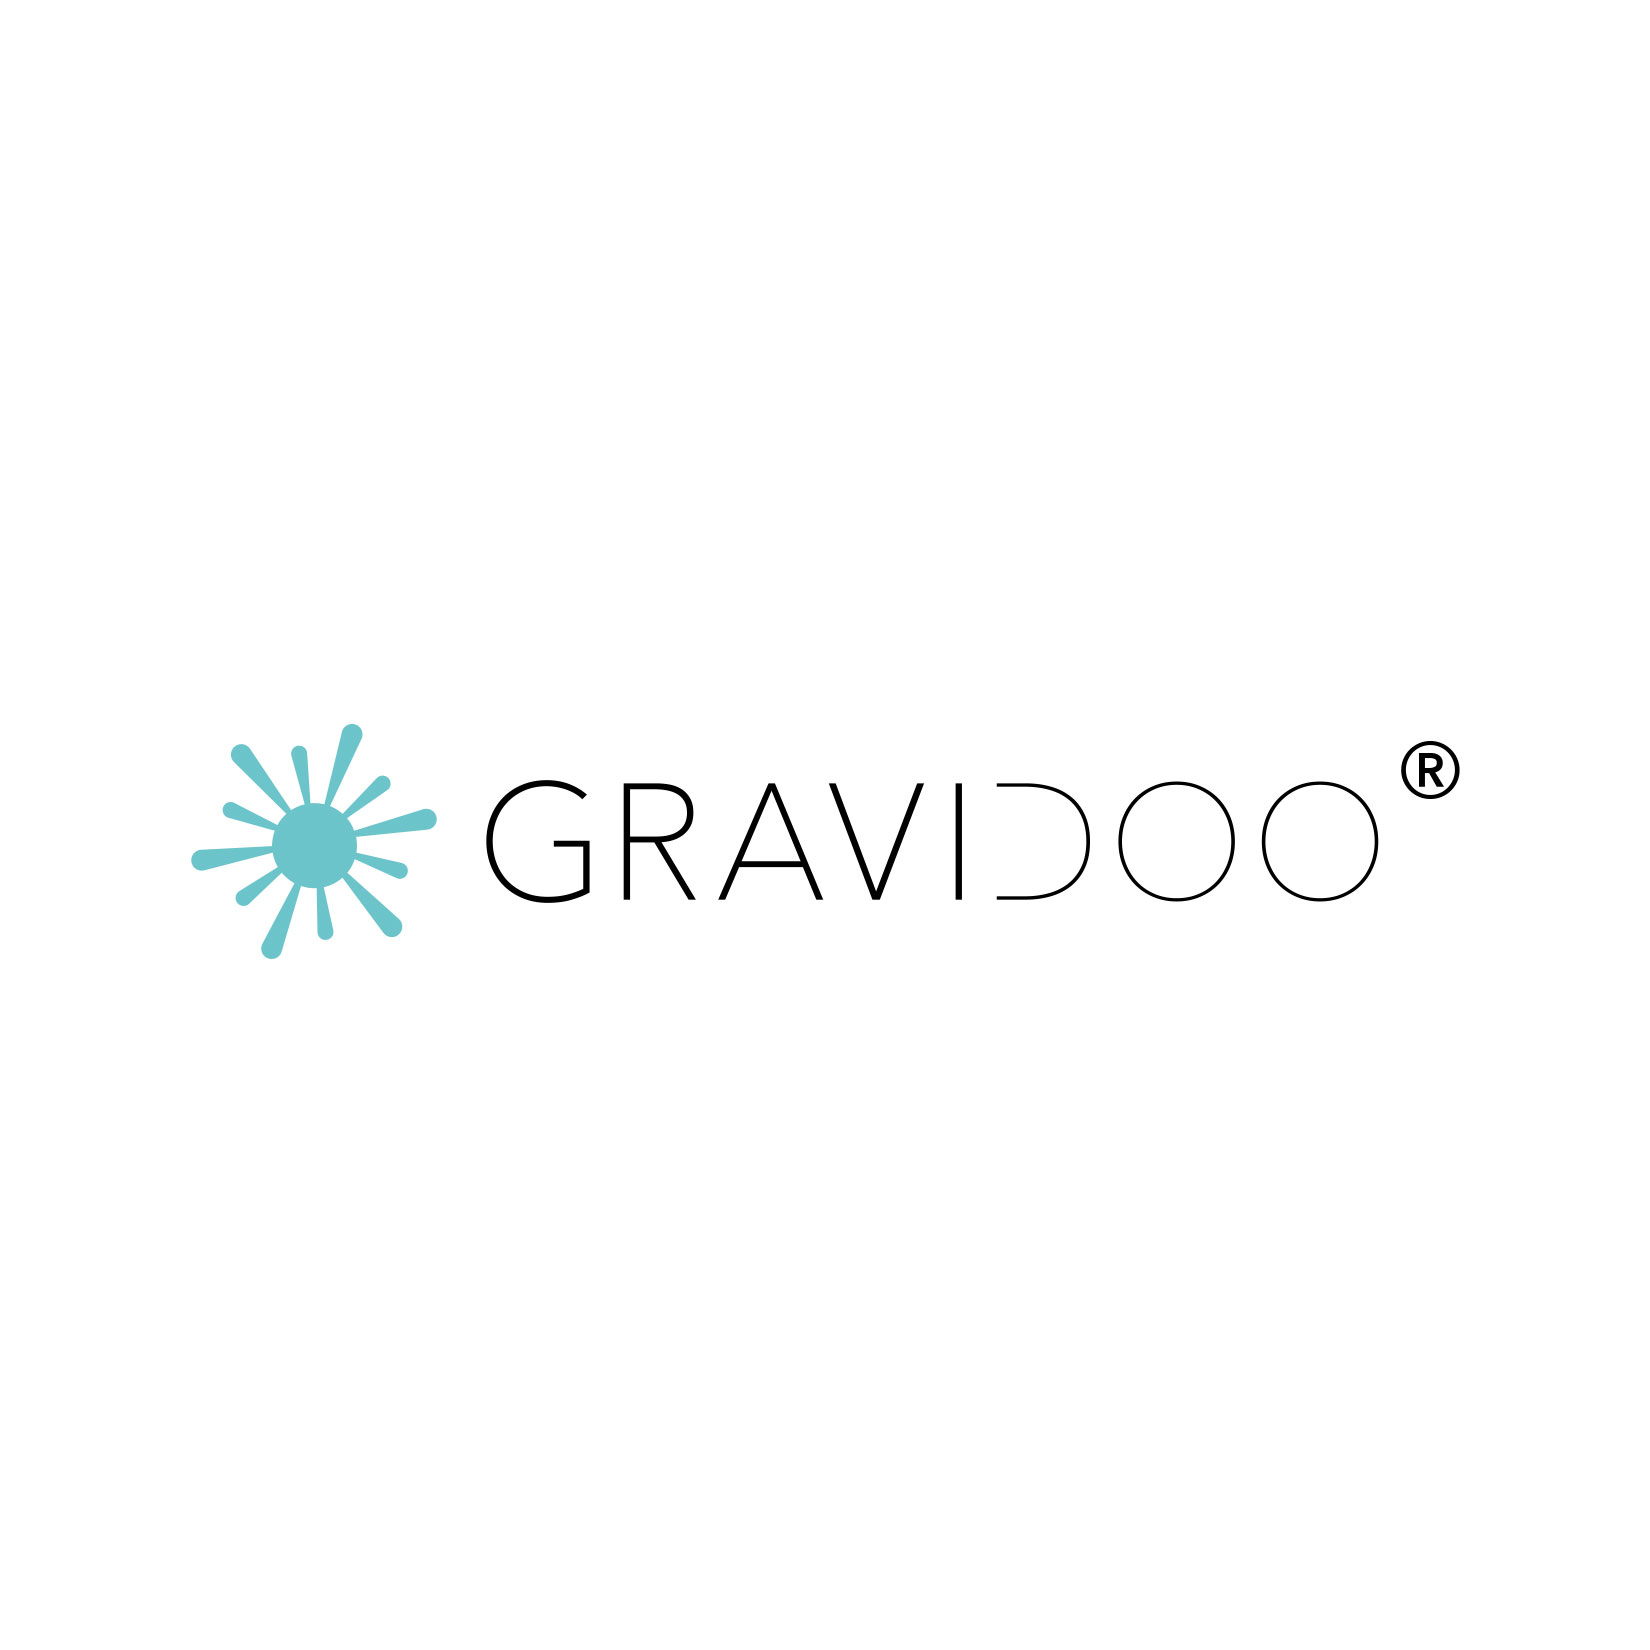 Wort und Bildmarke der Marke GRAVIDOO werden auf weißem Hintergrund präsentiert